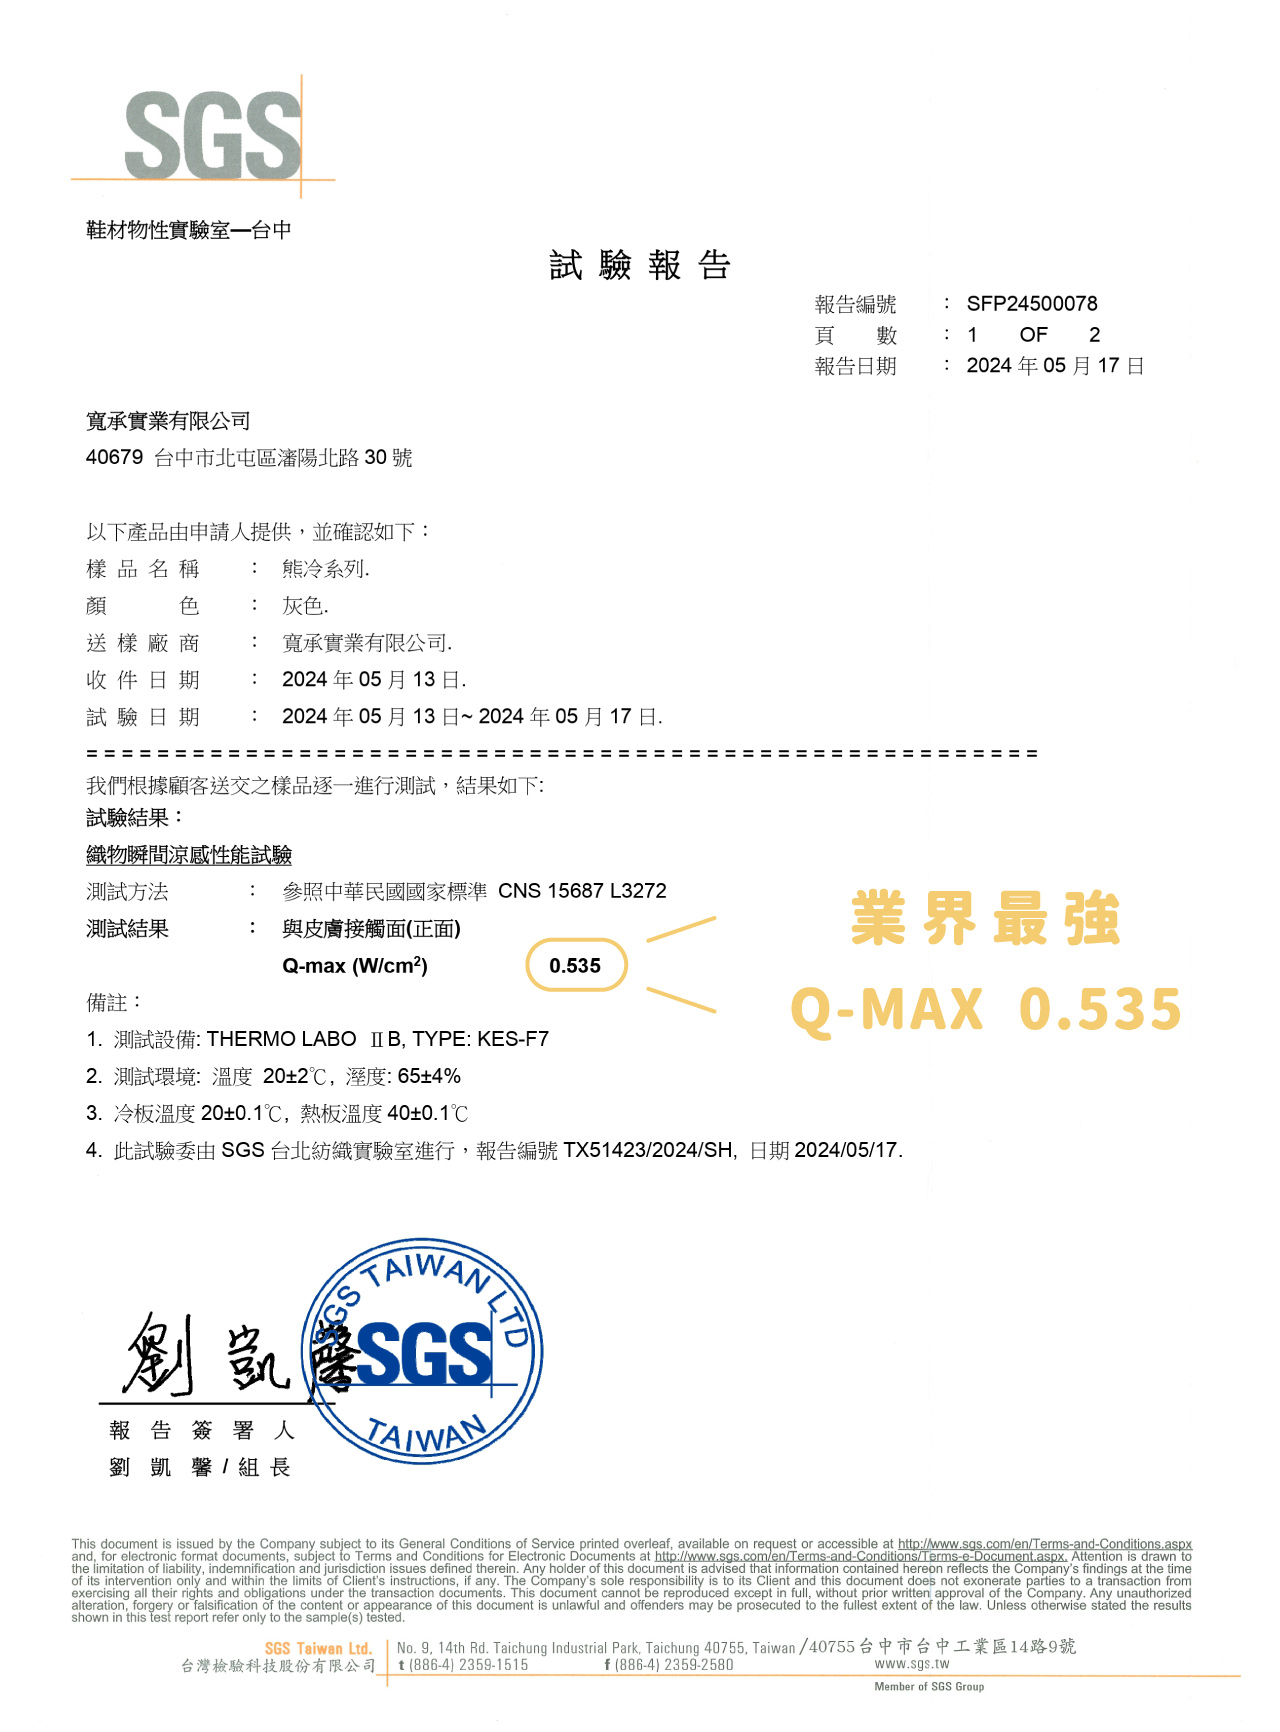 SGS檢驗報告Qmax值0.535業界最高